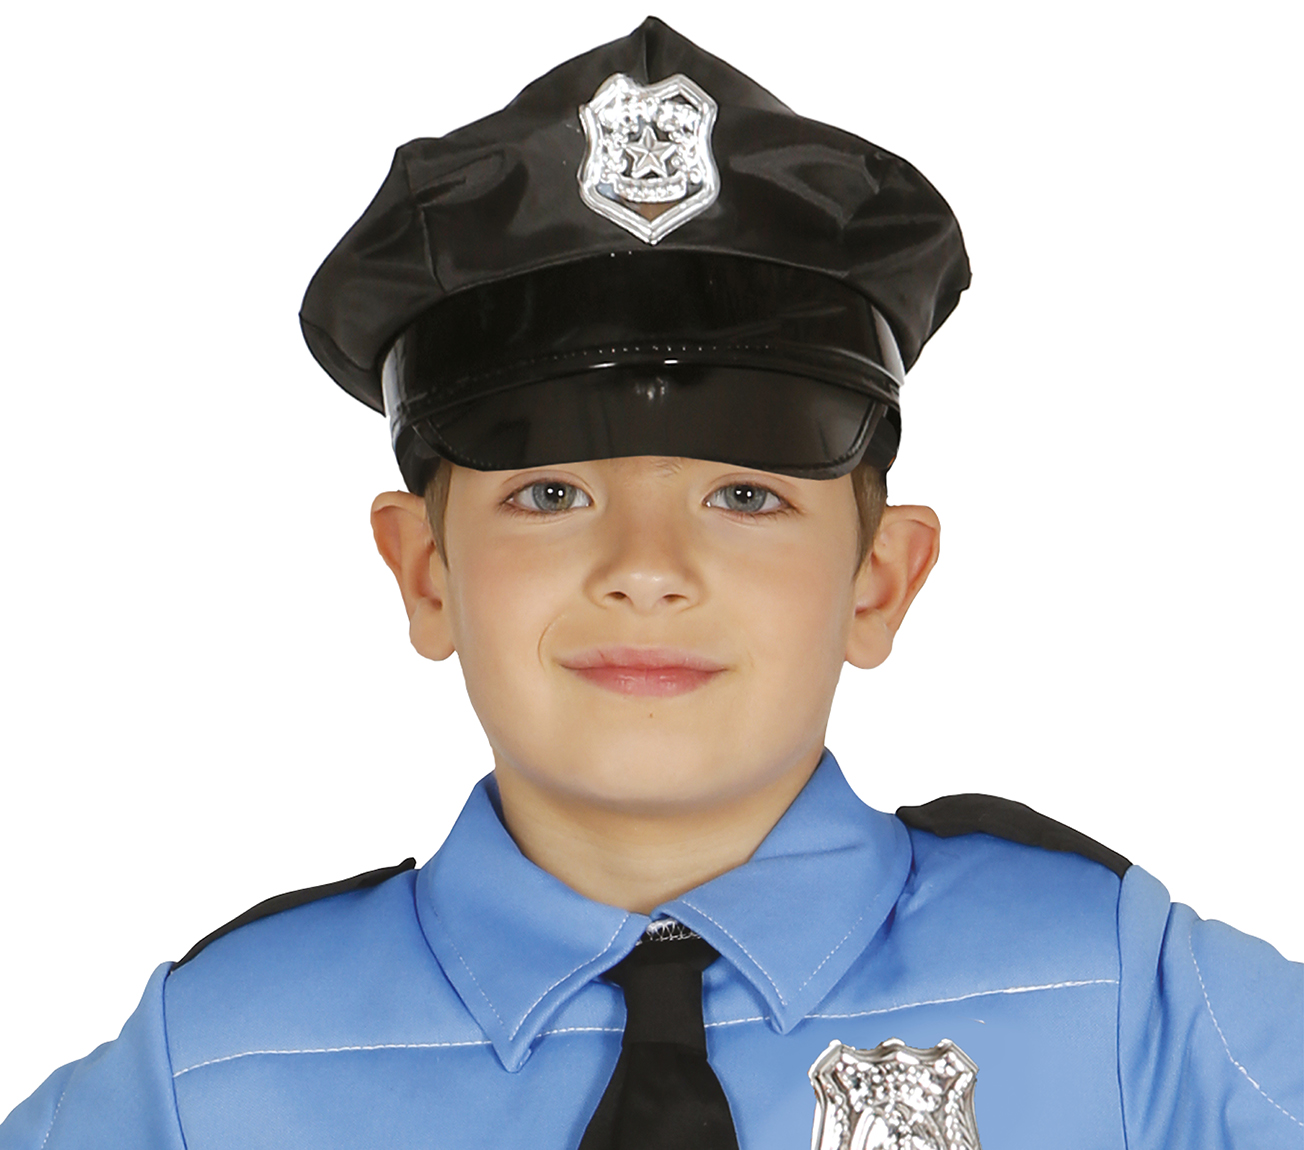 Guirca Policejní čepice pro děti